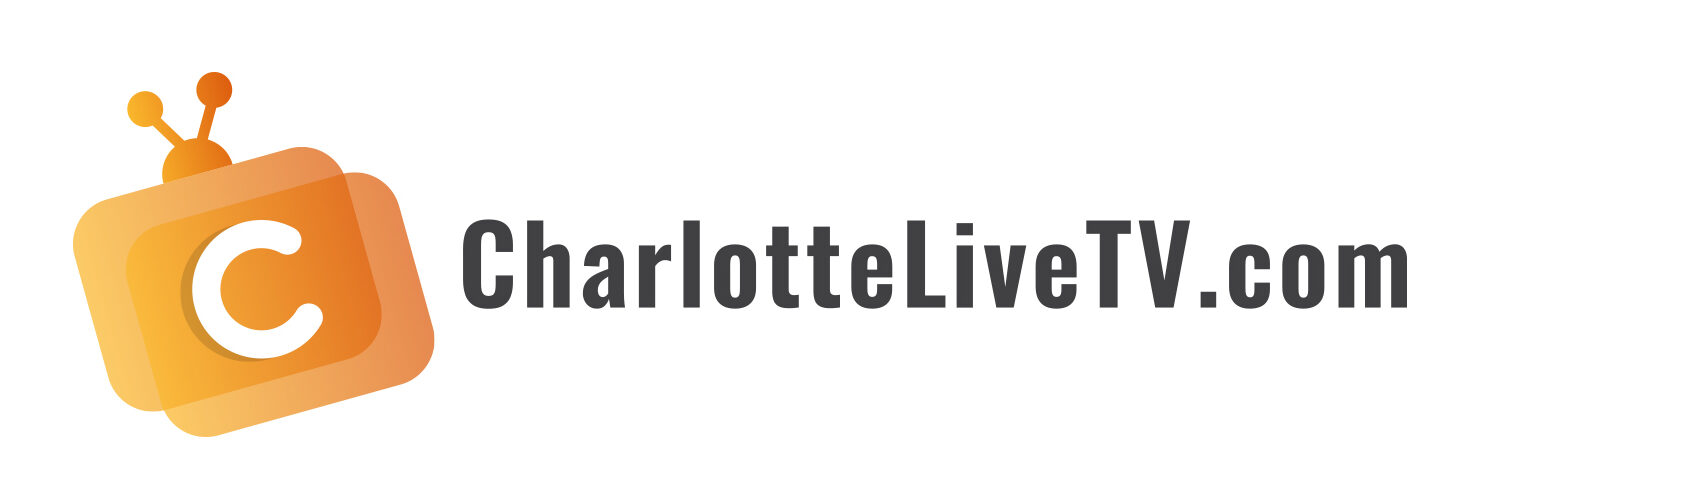 CharlotteLiveTV